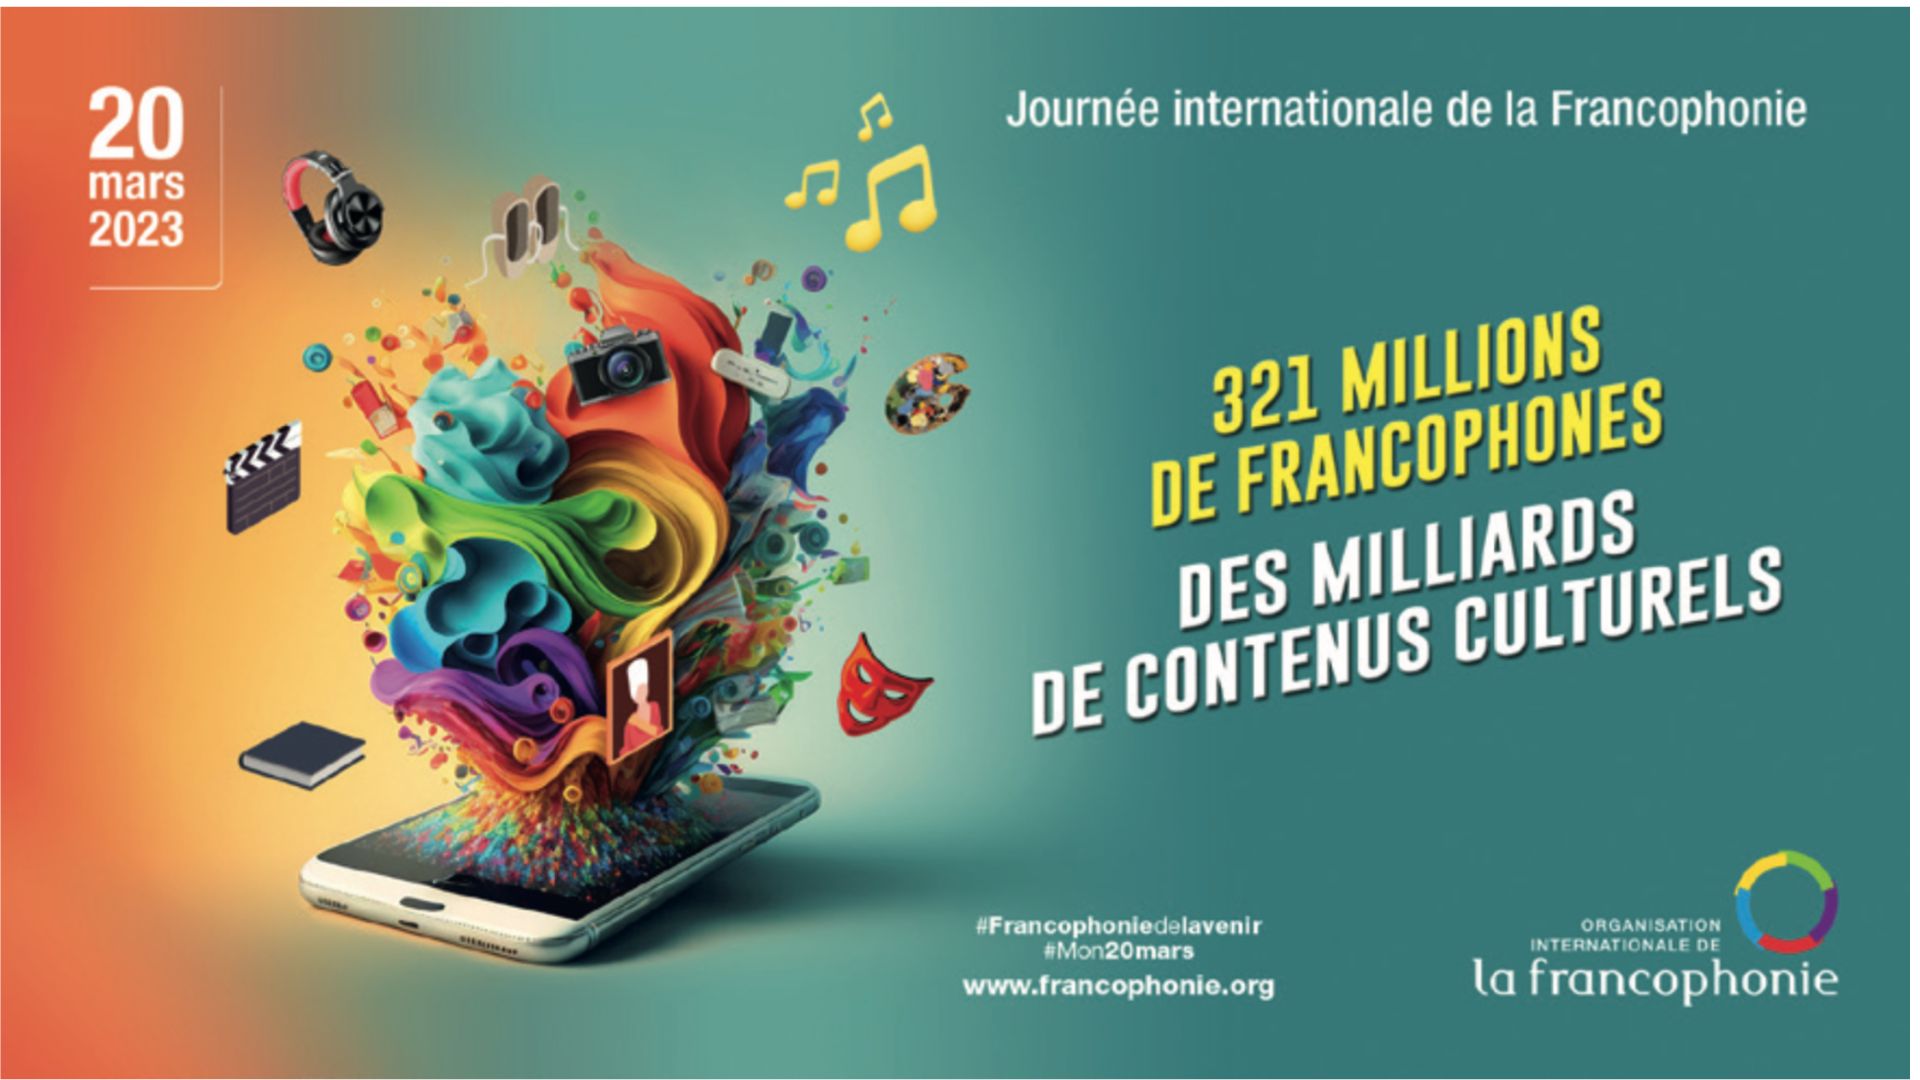 Le 20 mars, journée internationale de la francophonie